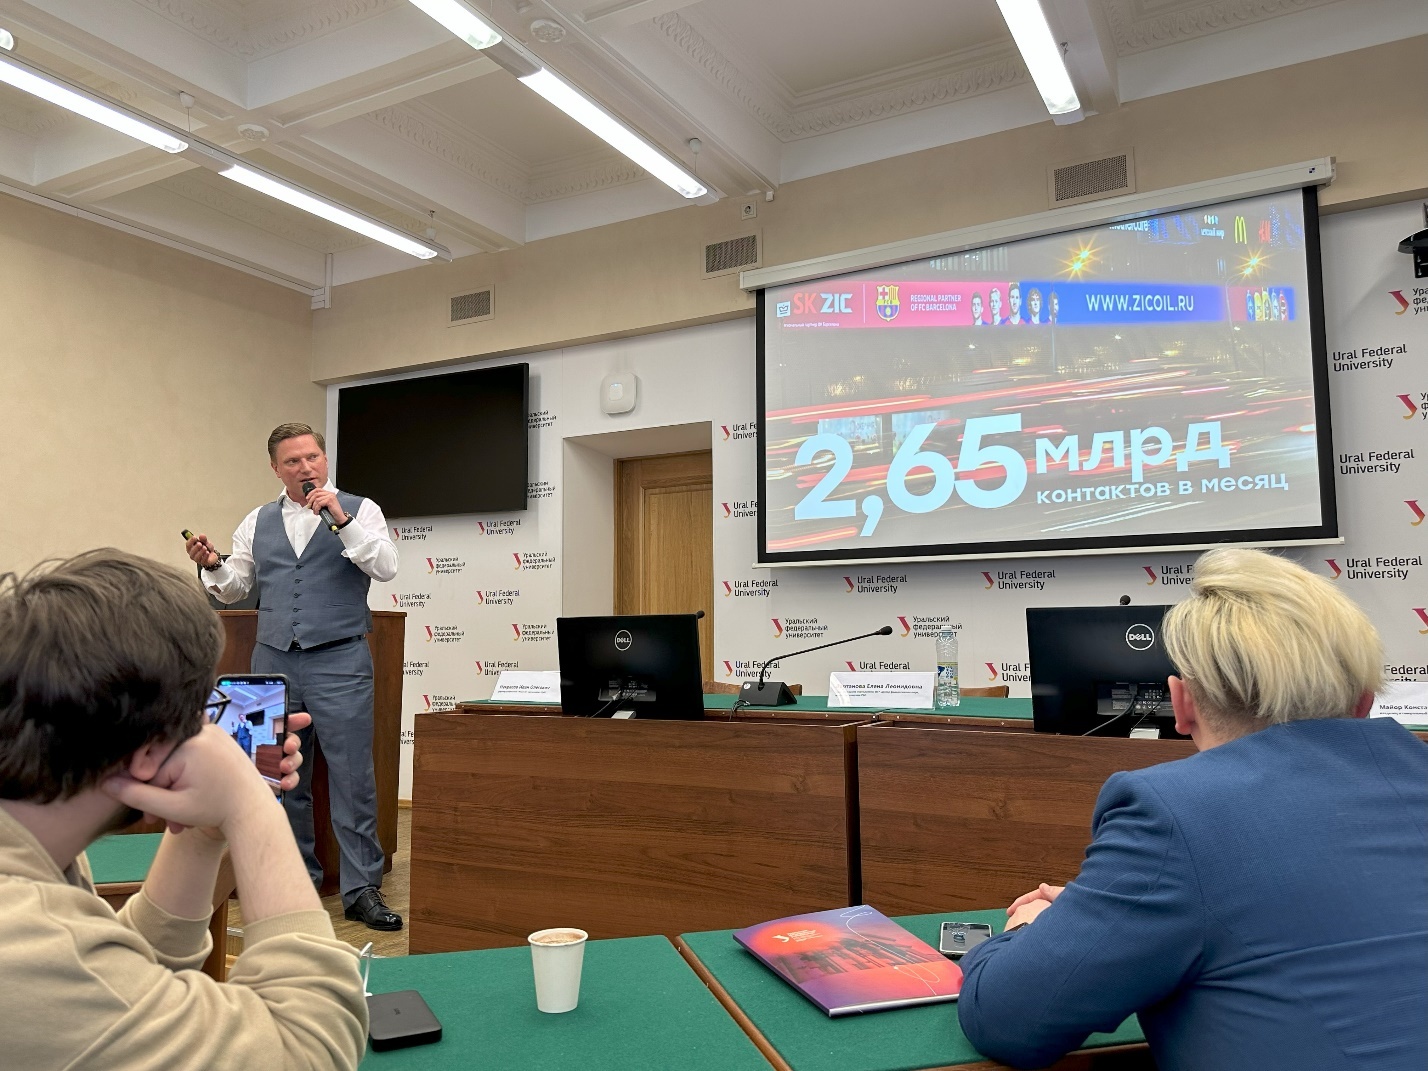 Выступление владельца Maer Константина Майора на научно-практической конференции факультета журналистики УрФУ в Екатеринбурге.